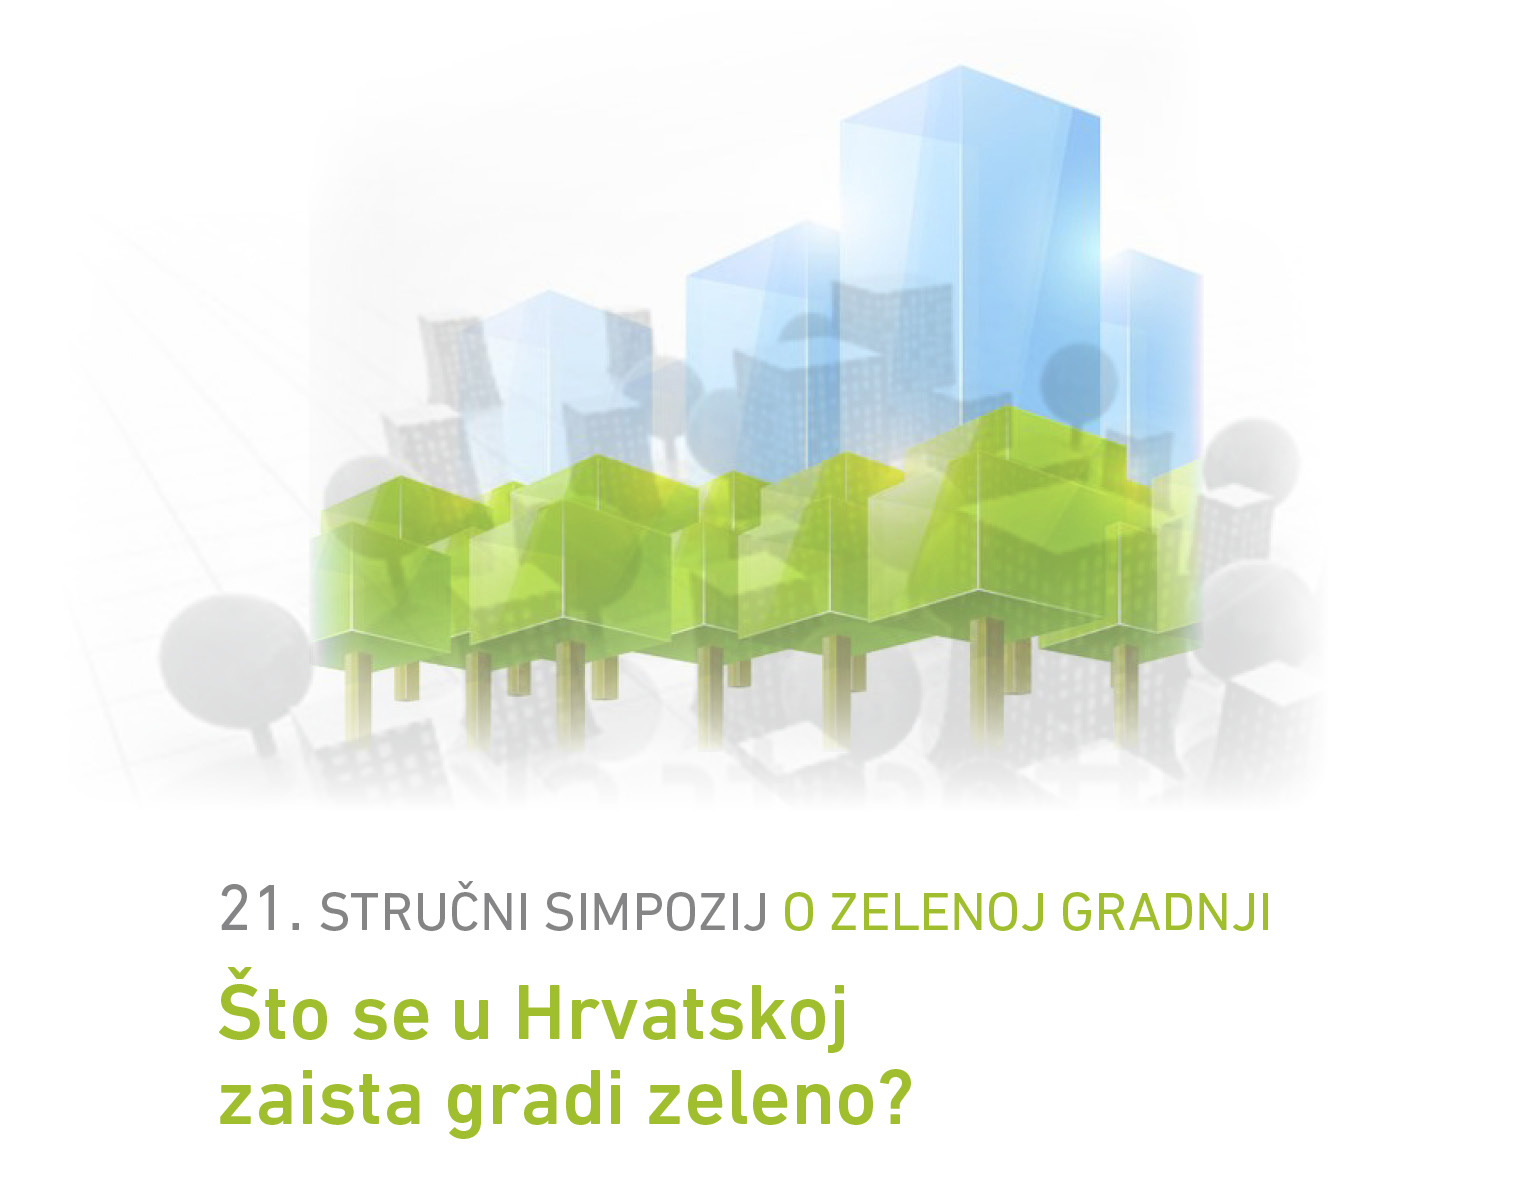 Održan stručni simpozij o zelenoj gradnji u Splitu 21. stručni simpozij o zelenoj gradnji: “Što se u Hrvatskoj zaista gradi zeleno?”